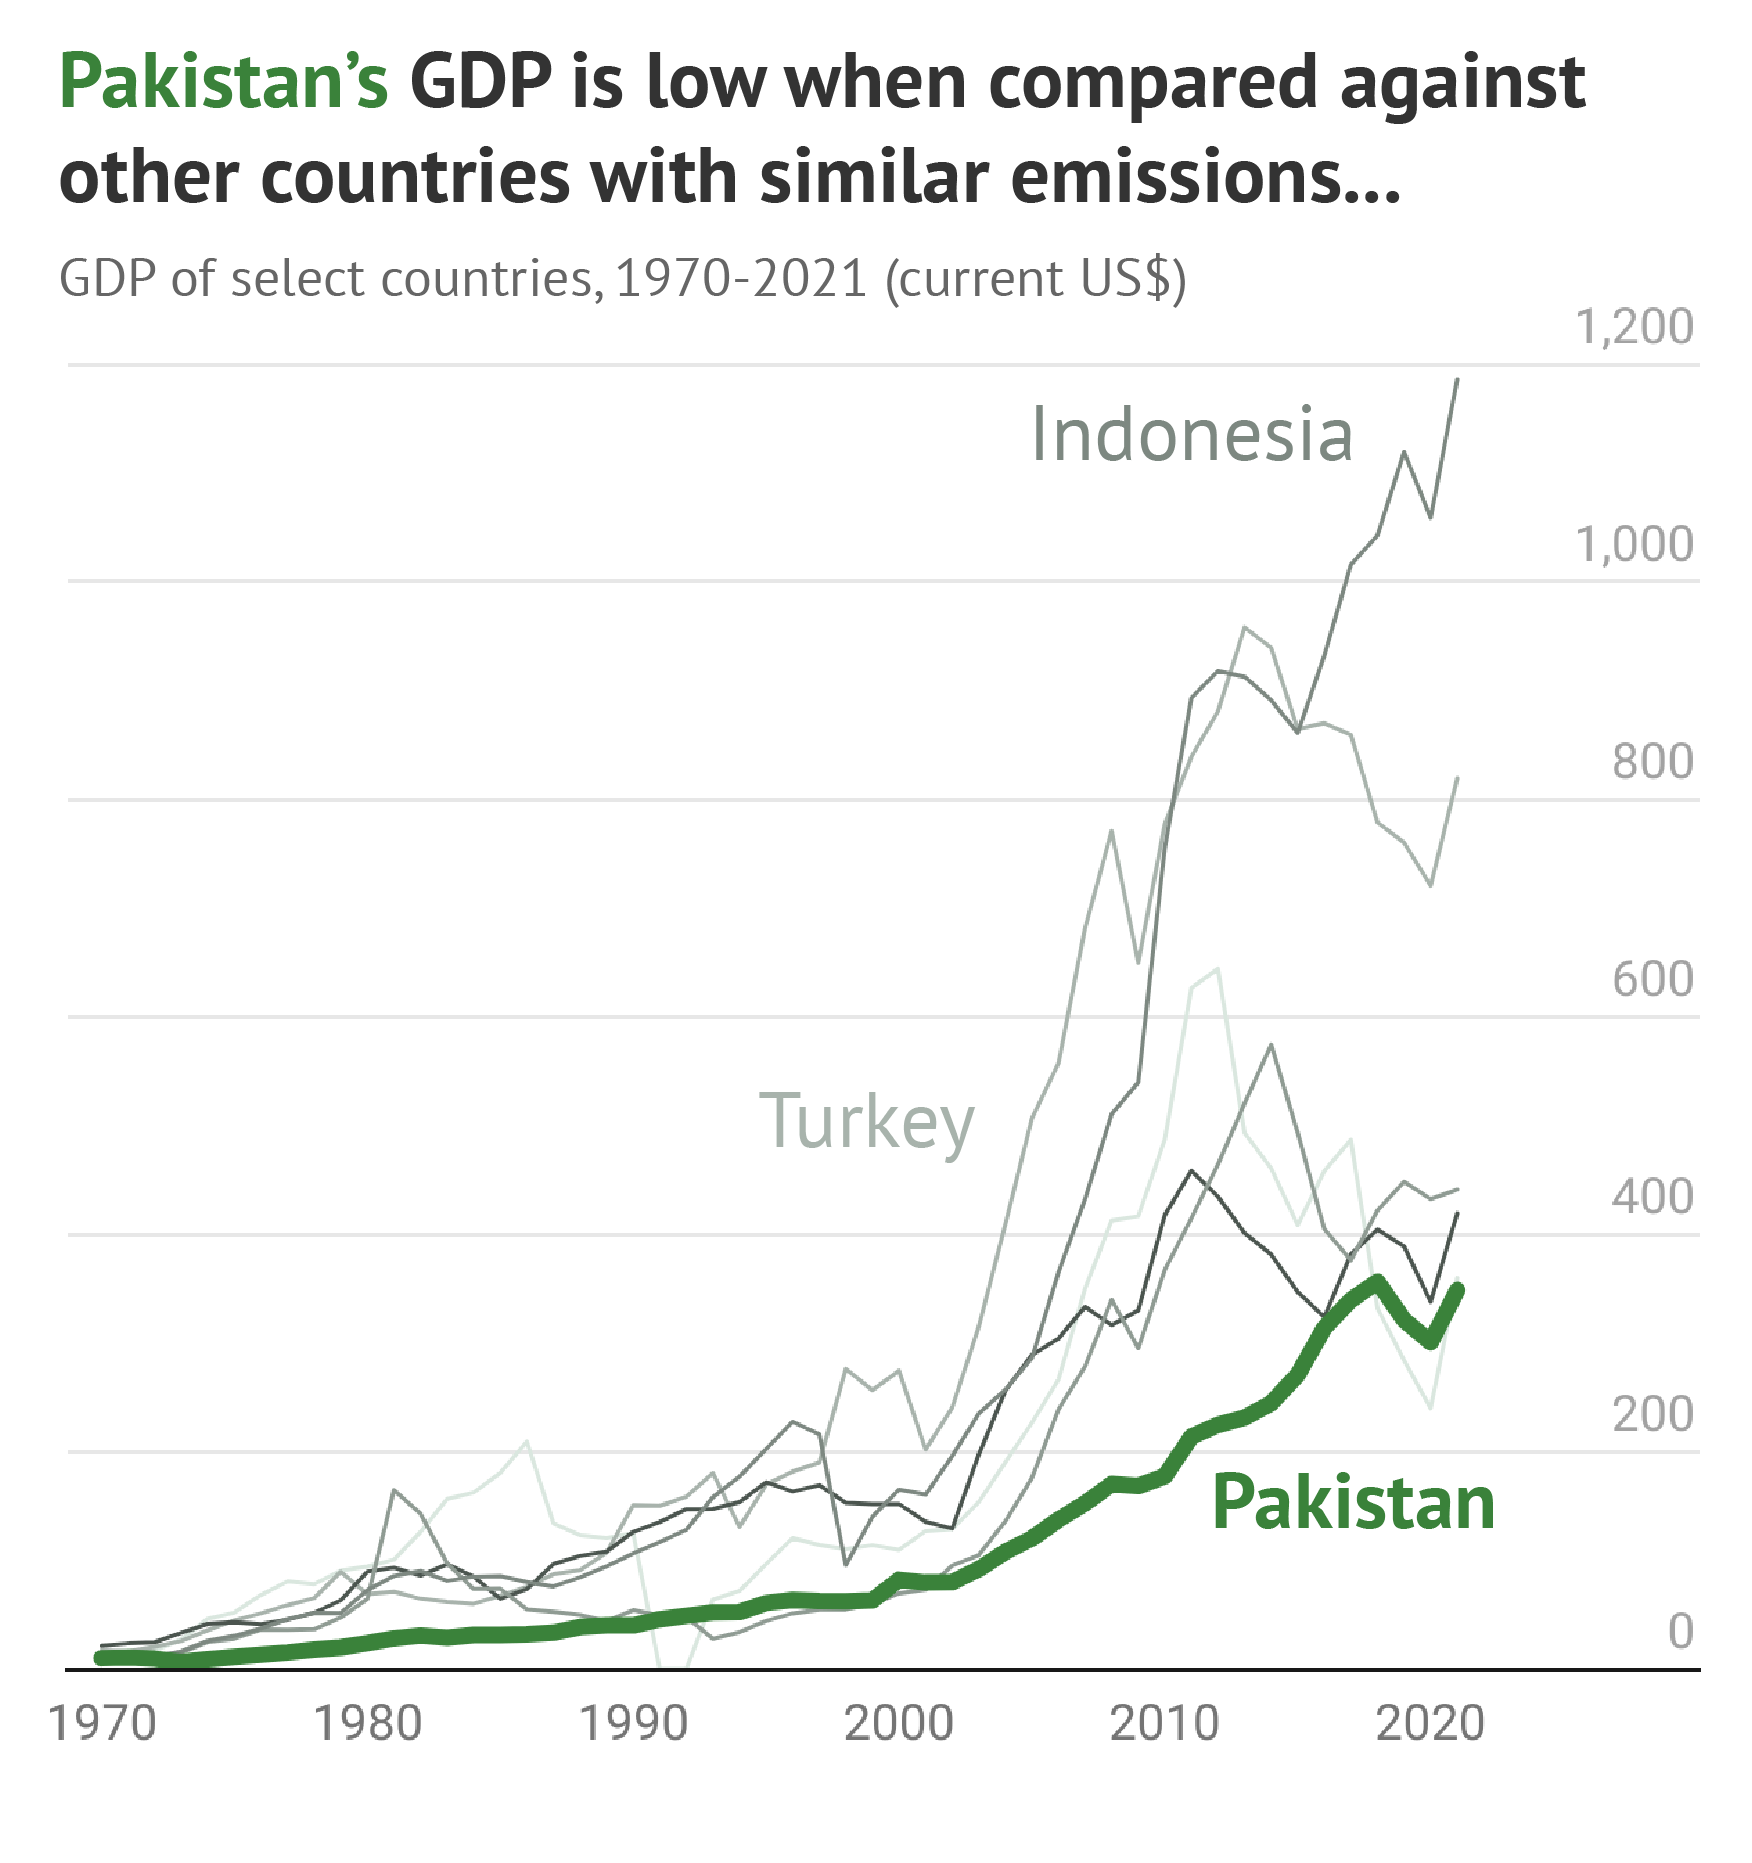 图表显示，与排放量相似的其他国家相比，巴基斯坦的 GDP 较低。